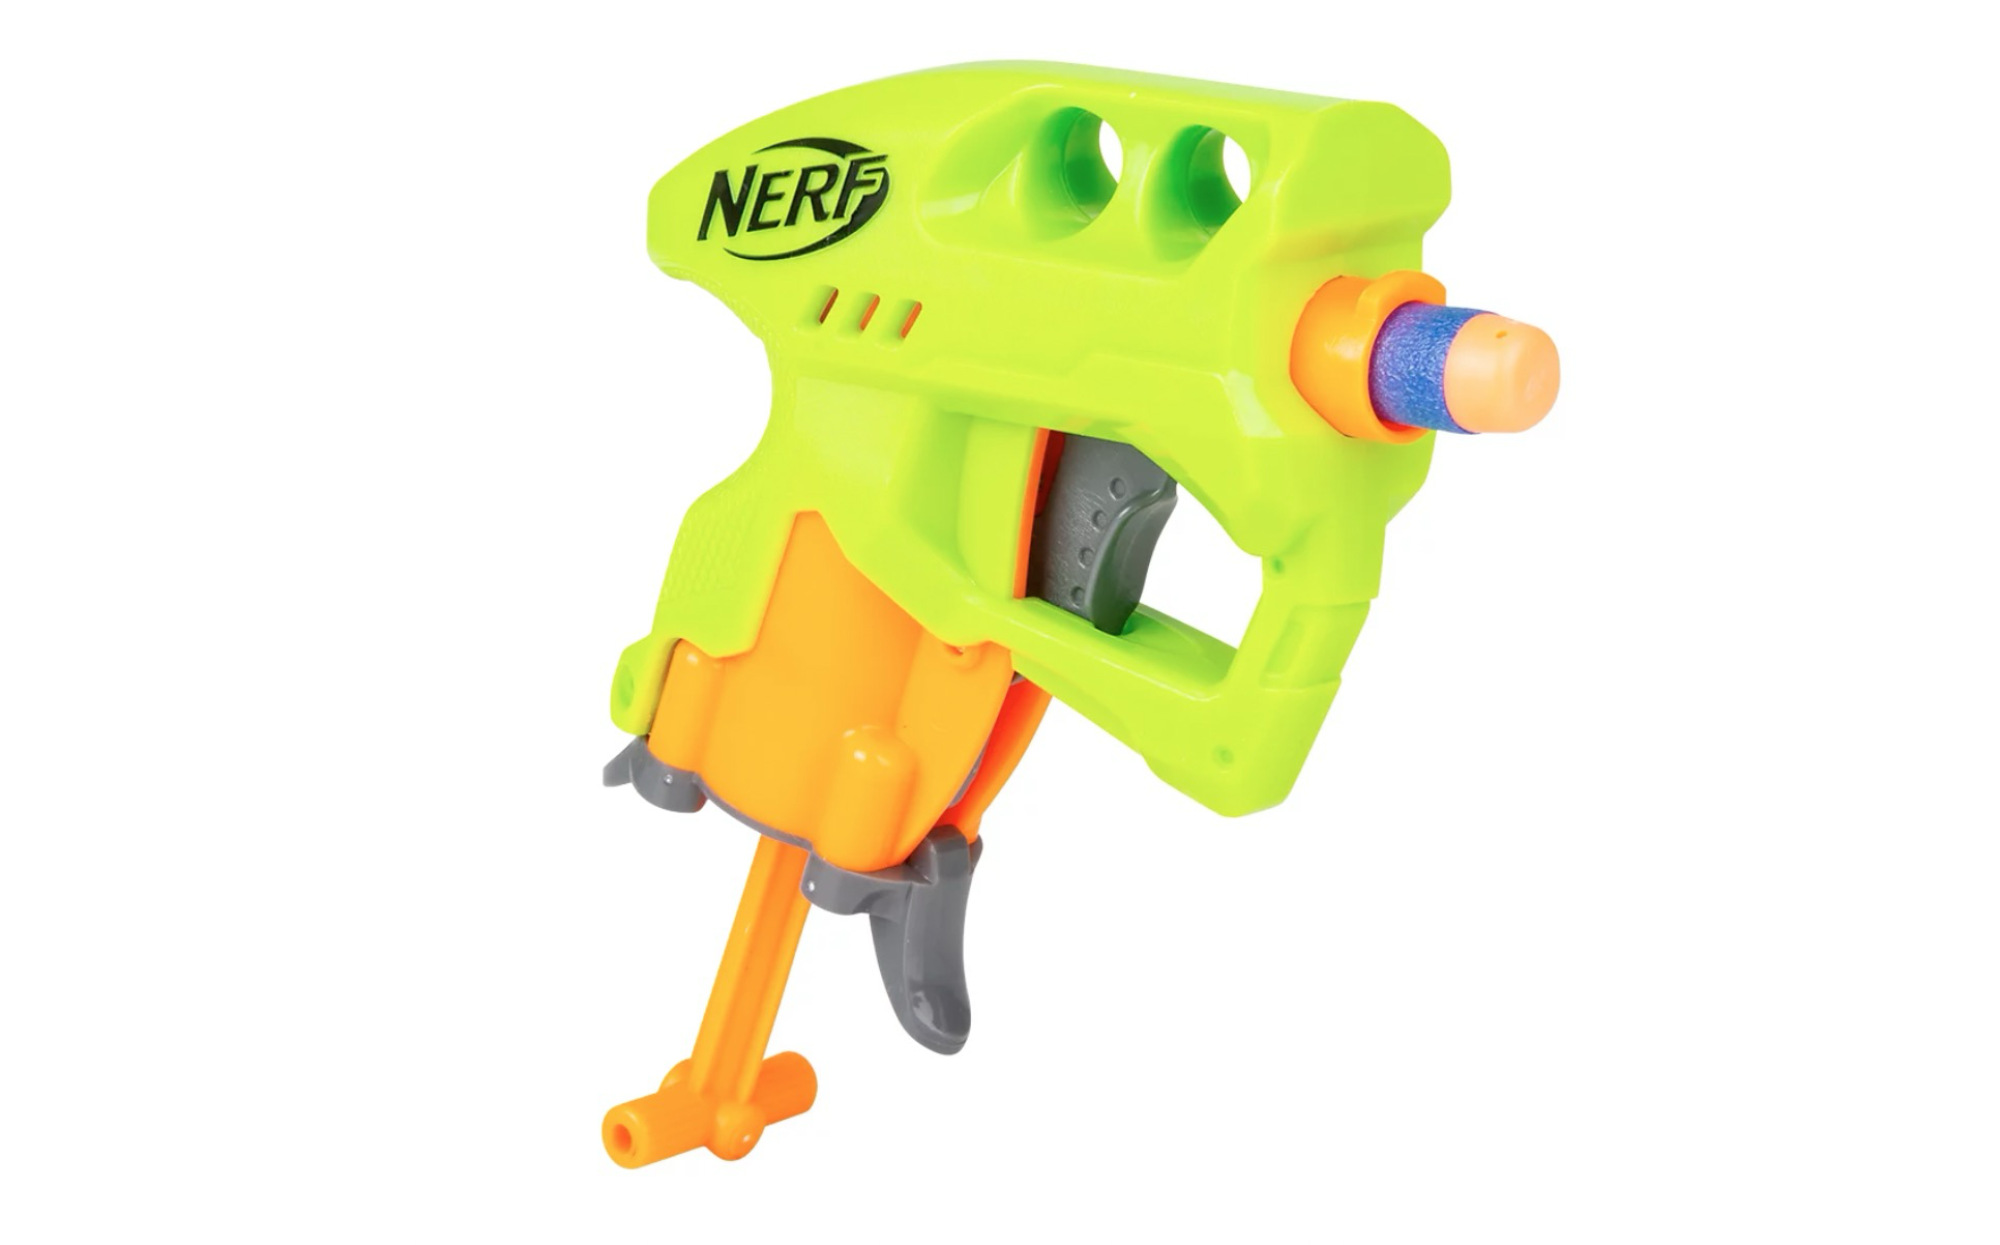  Nerf Gun